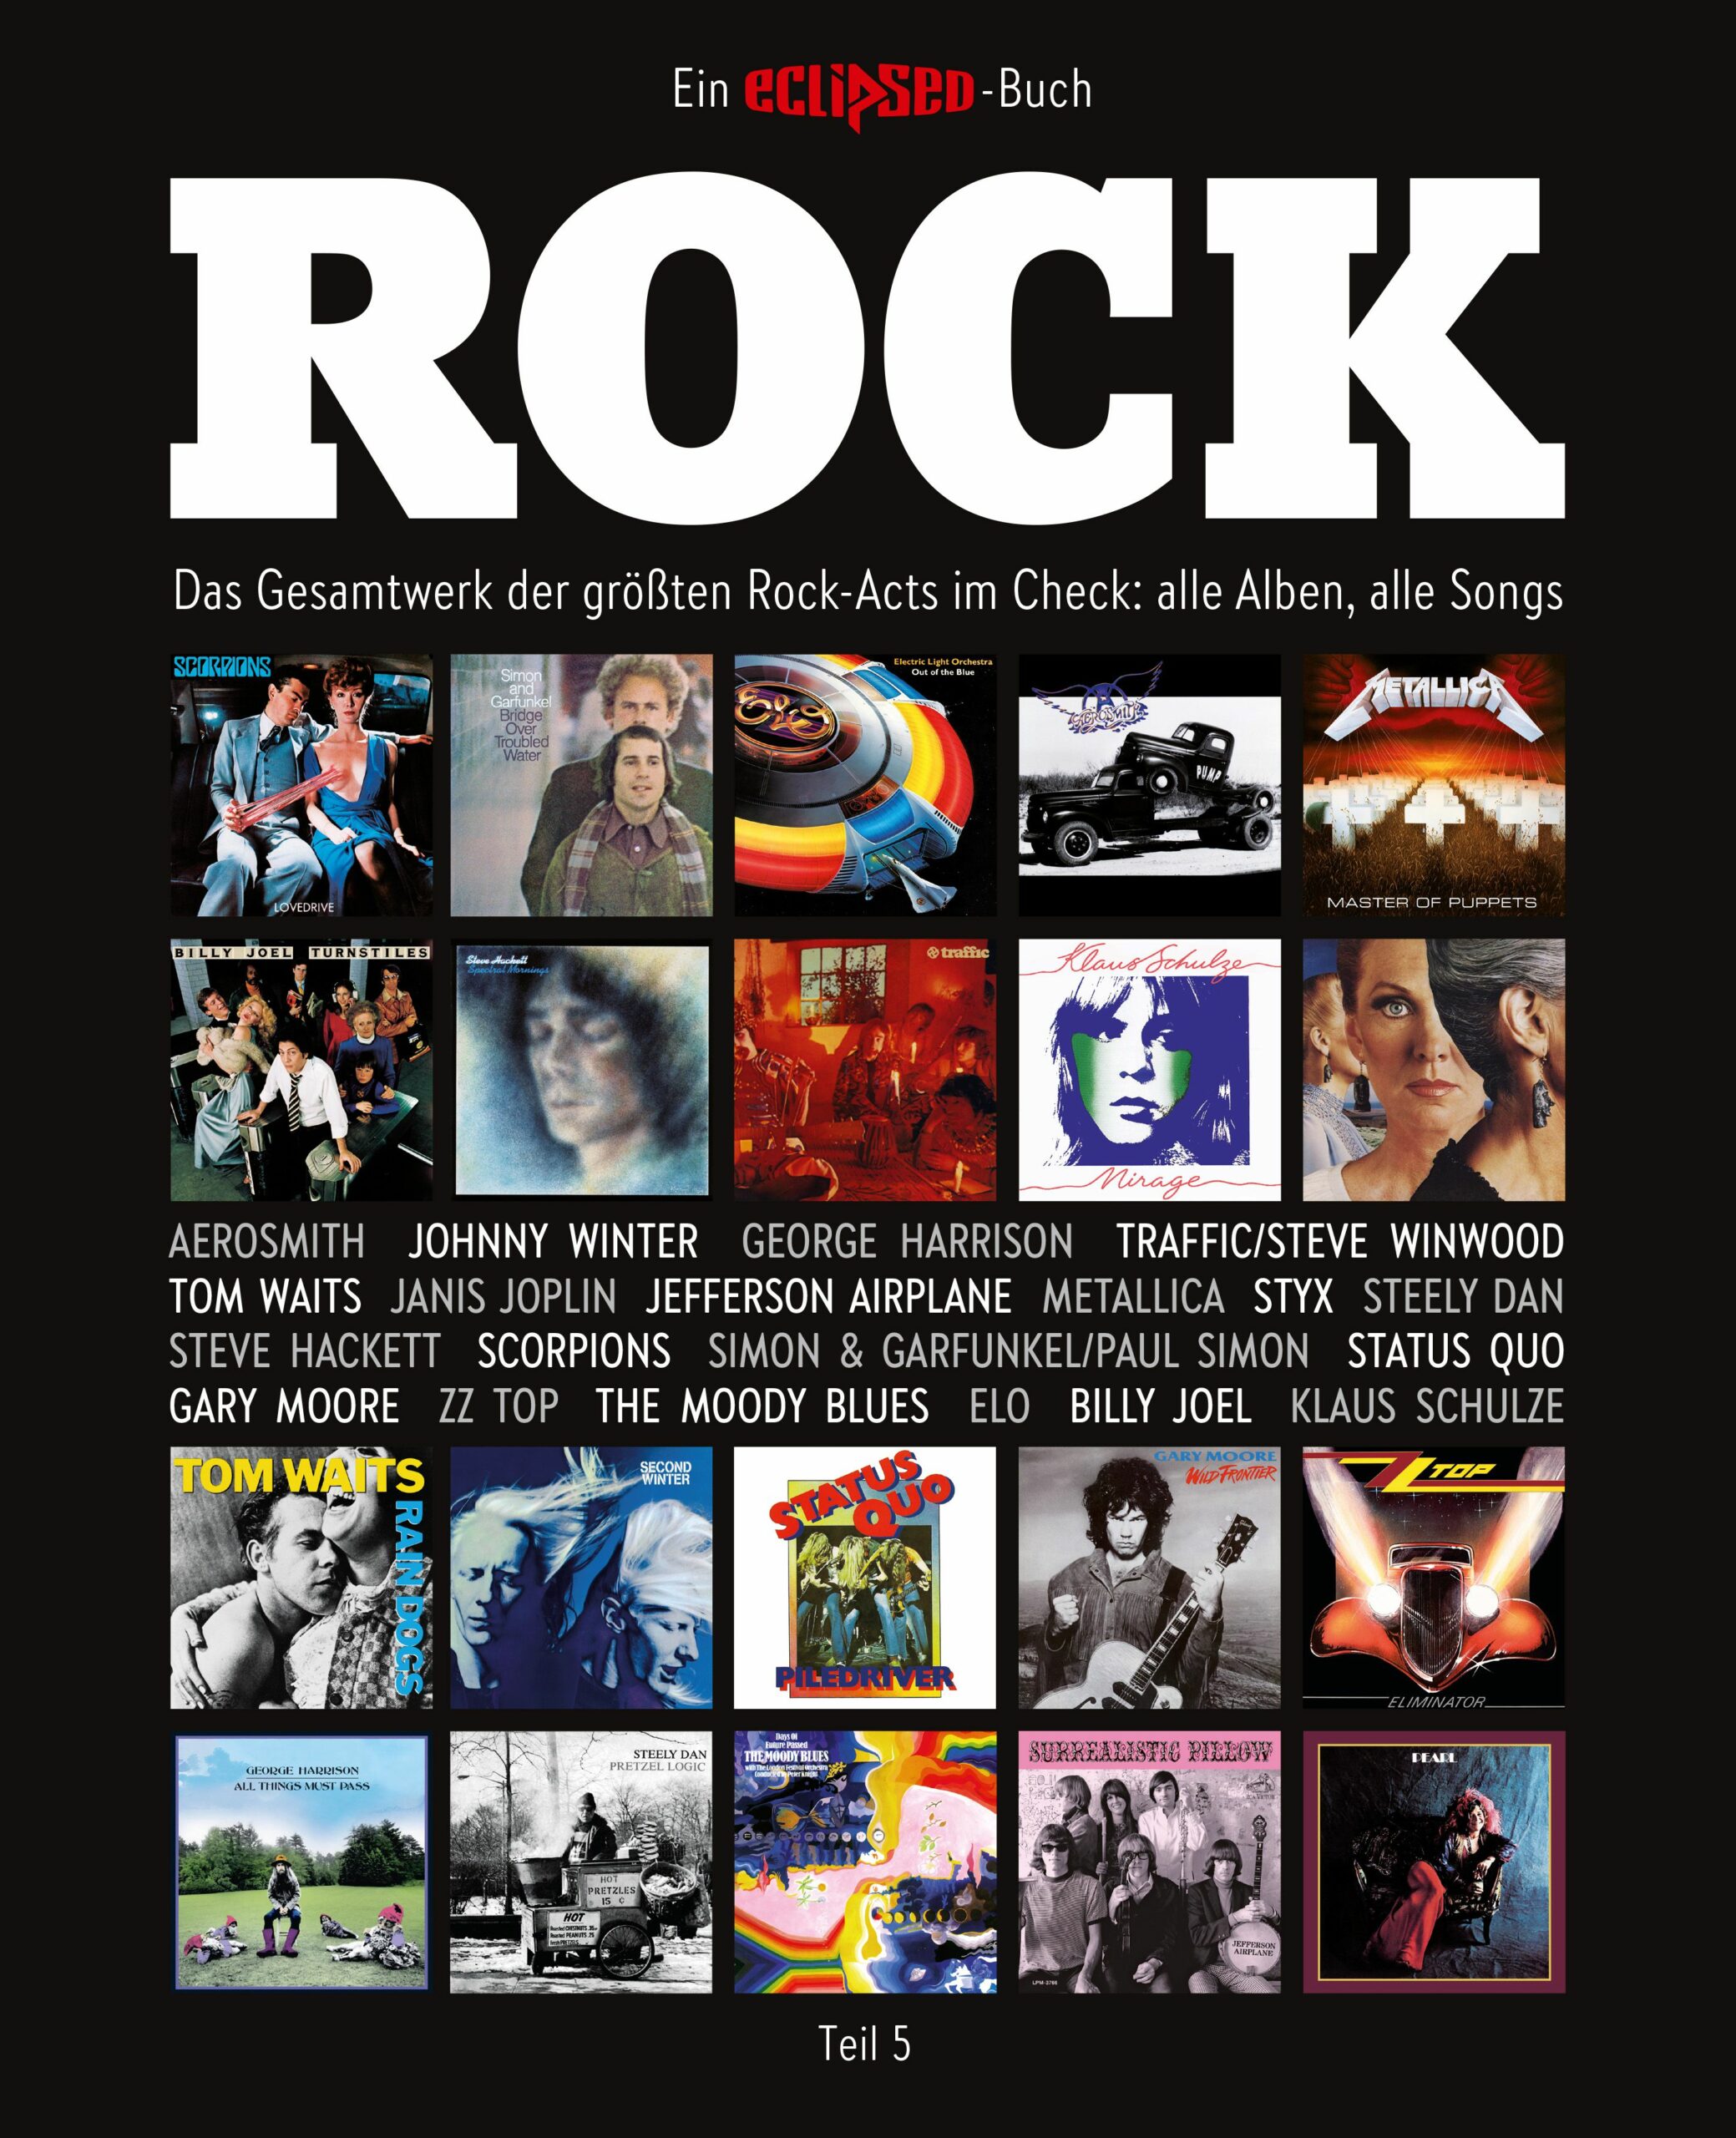 Rock Teil 5 – Ein Eclipsed Buch